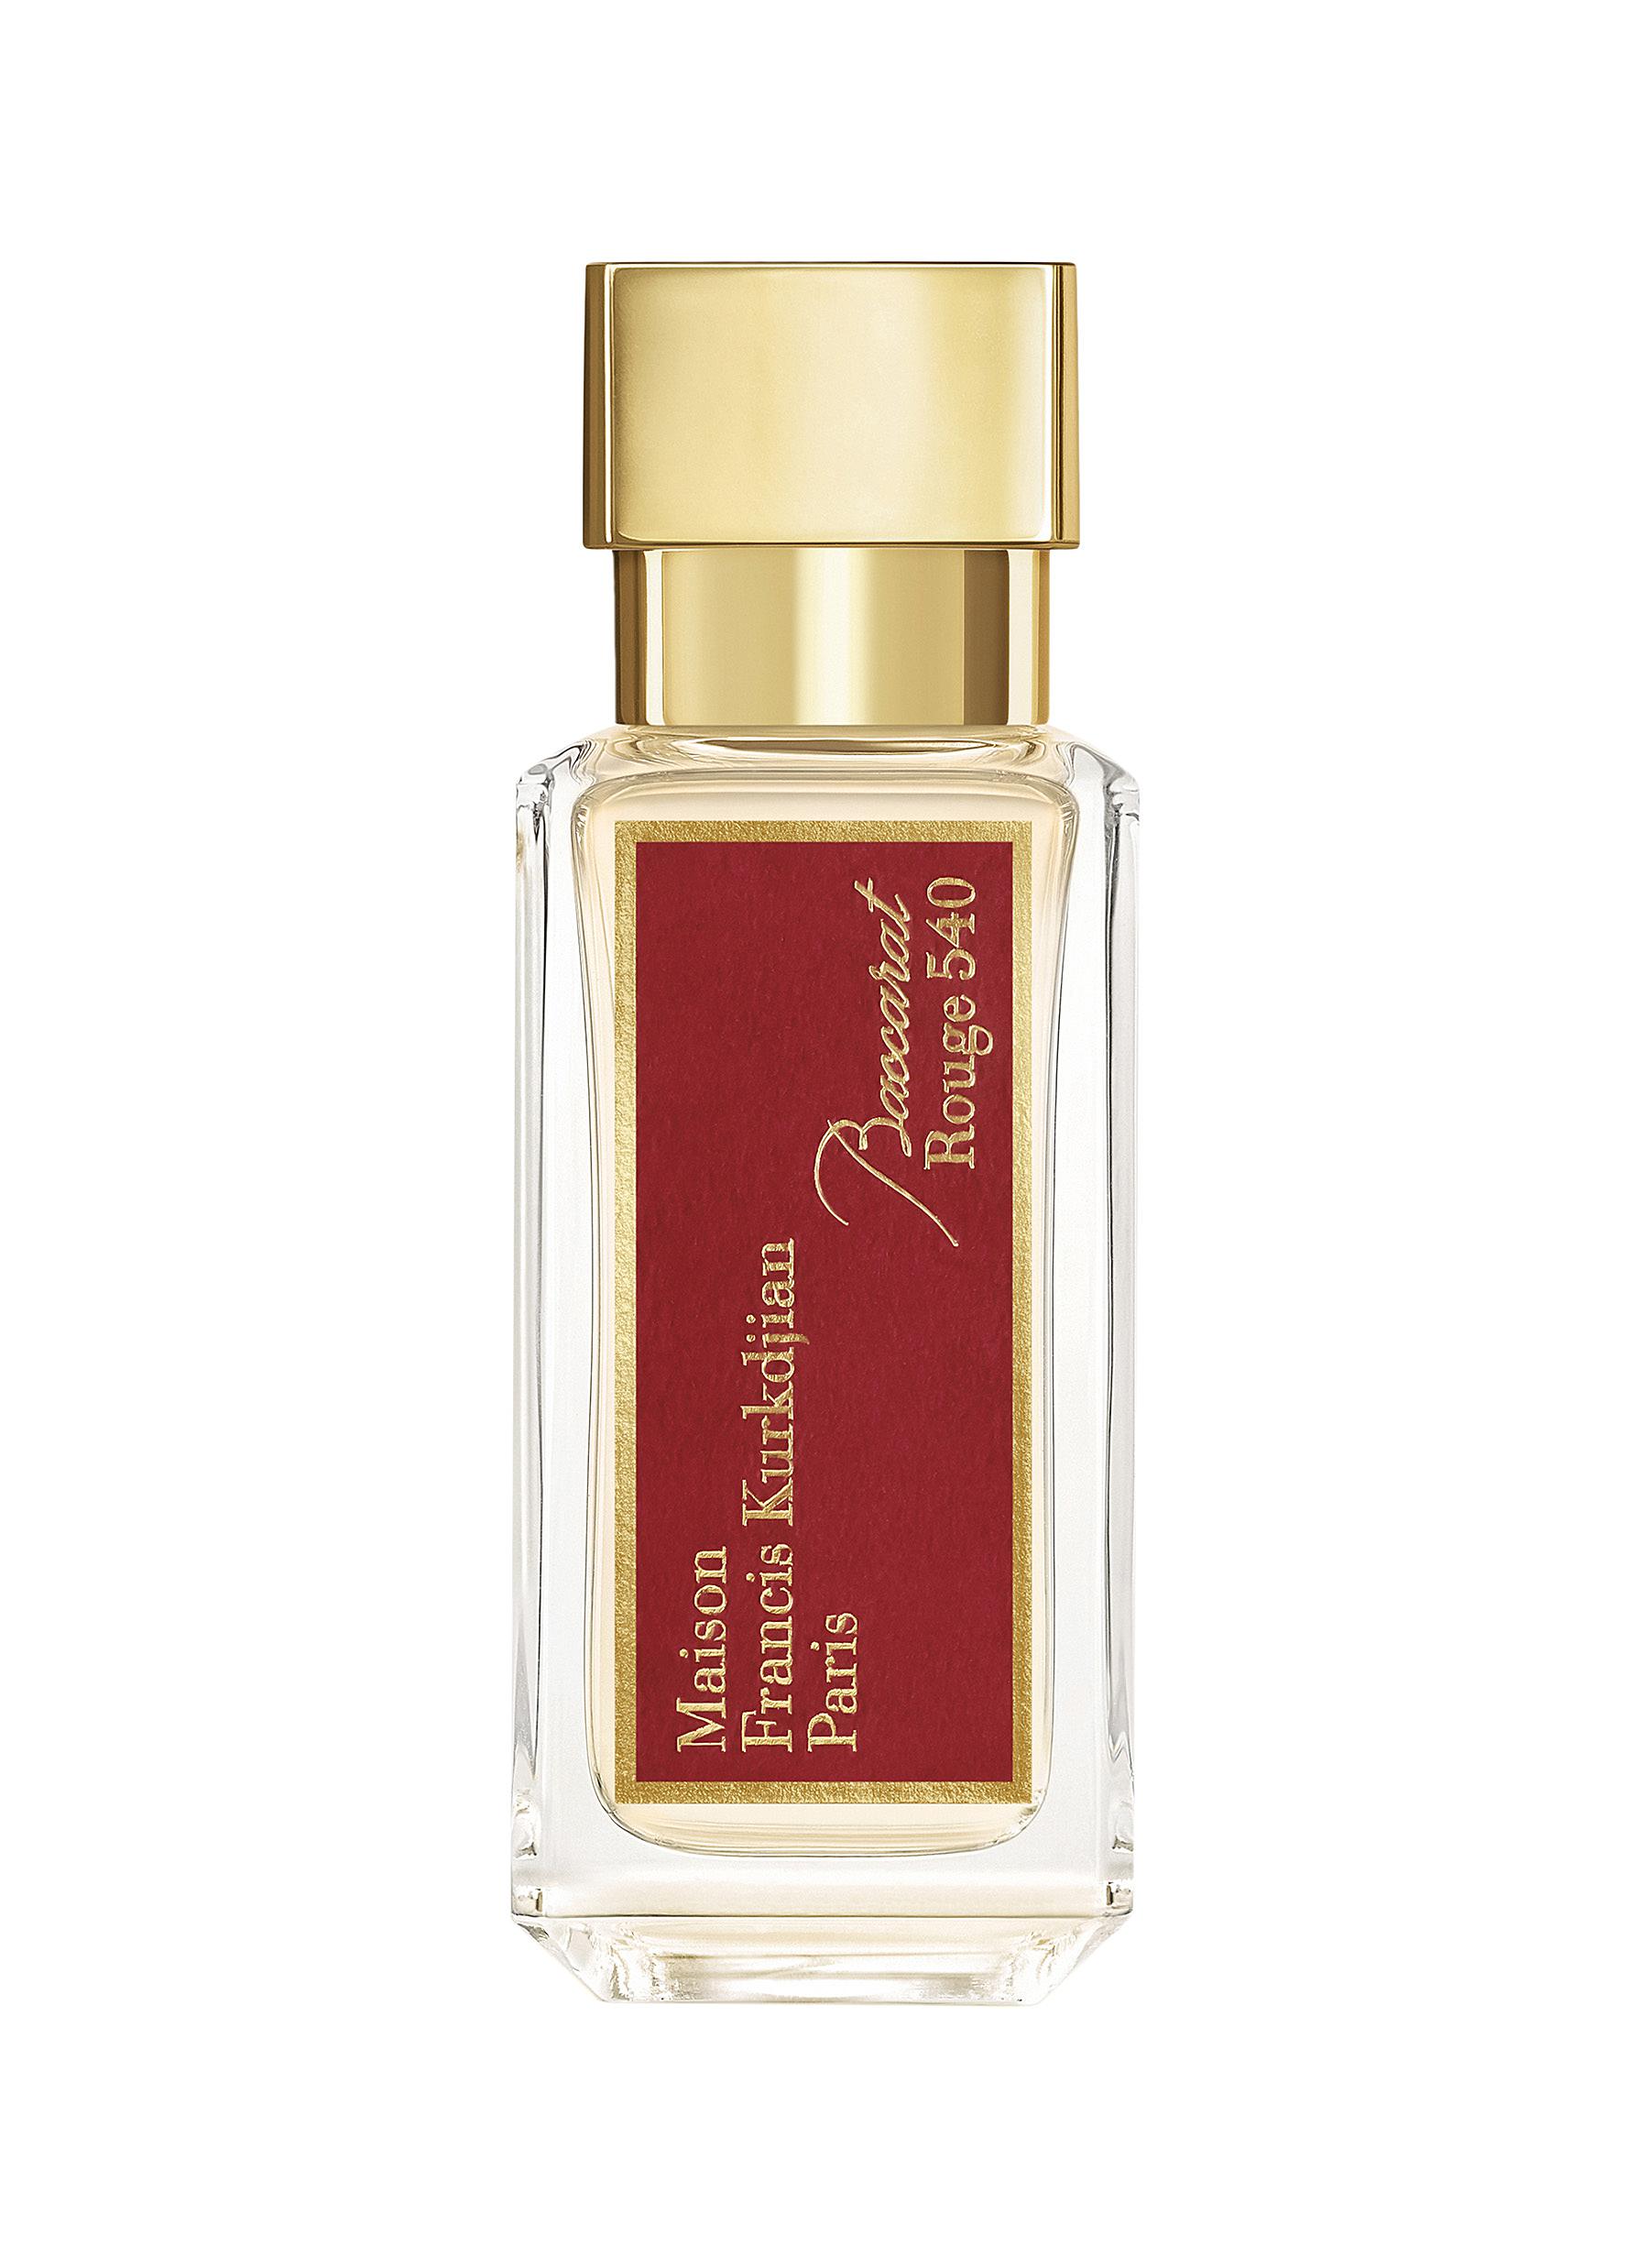 Baccarat Rouge 540 Eau de Parfum 35ml 